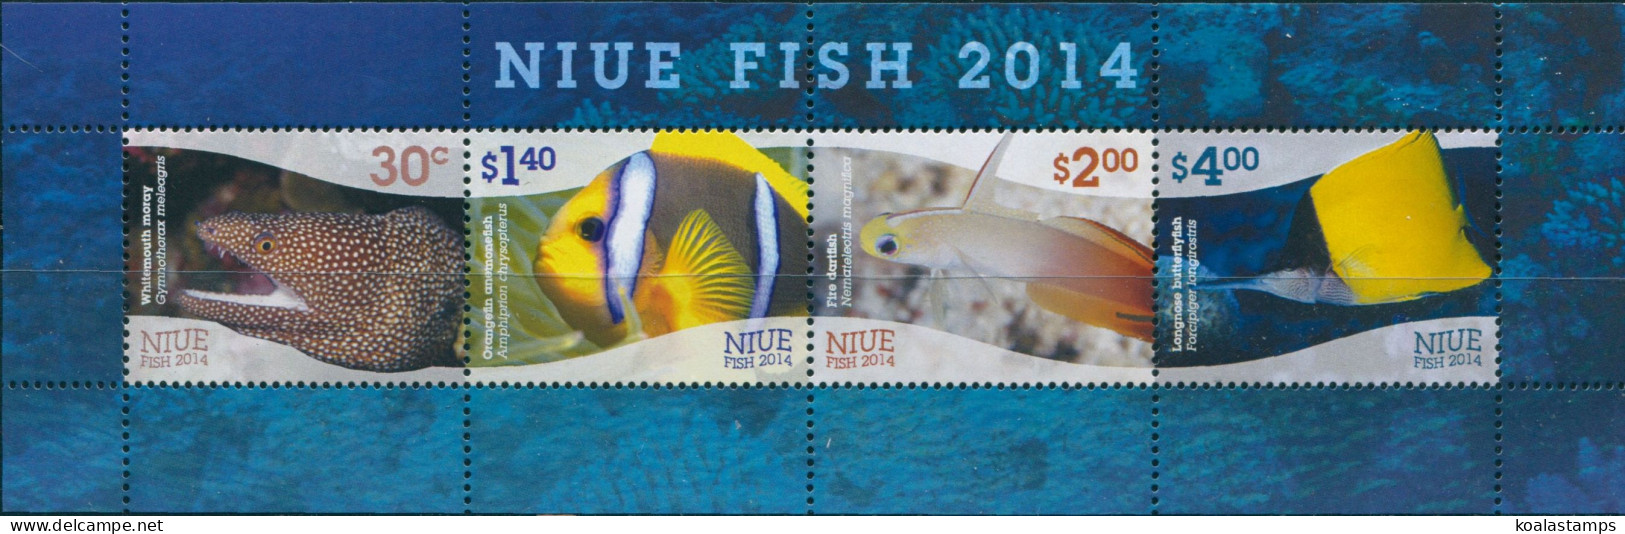 Niue 2014 SG1120 Fish MS MNH - Niue